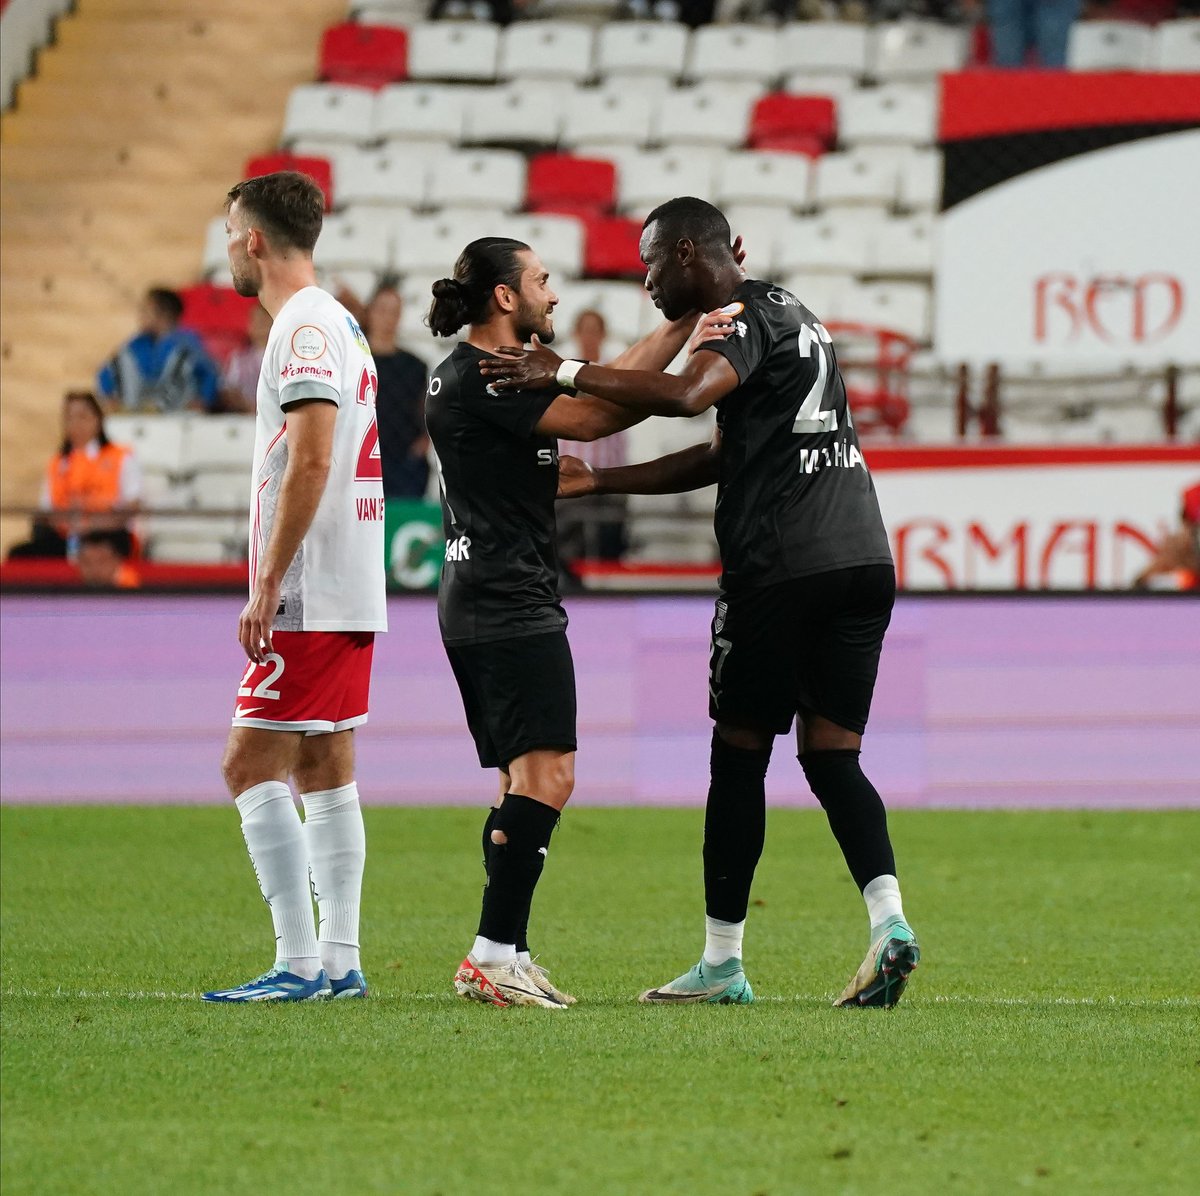 💥 Pendikspor, Antalyaspor'u deplasmanda 2-1 mağlup ederek ligde kalma yarışında umutlandı! ⚽ 13' Adam Buksa (Pen.) ⚽ 15' Mame Thiam ⚽ 45+7' Halil Akbunar 🟥 74' Sander Van de Streek